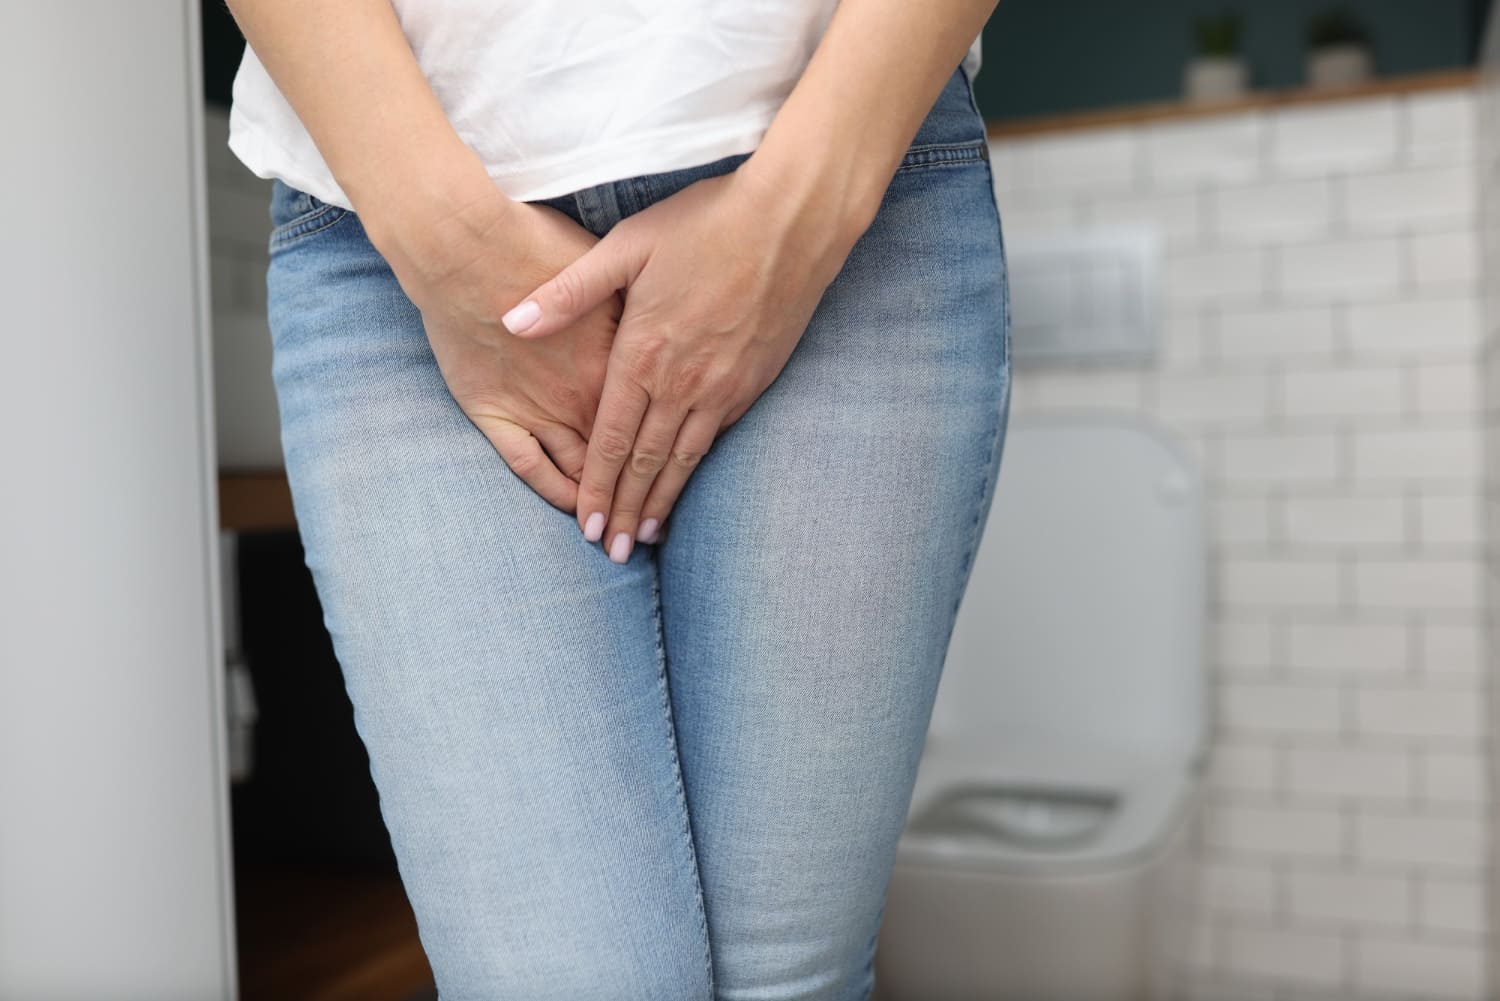 El 35% de la población sufre incontinencia urinaria